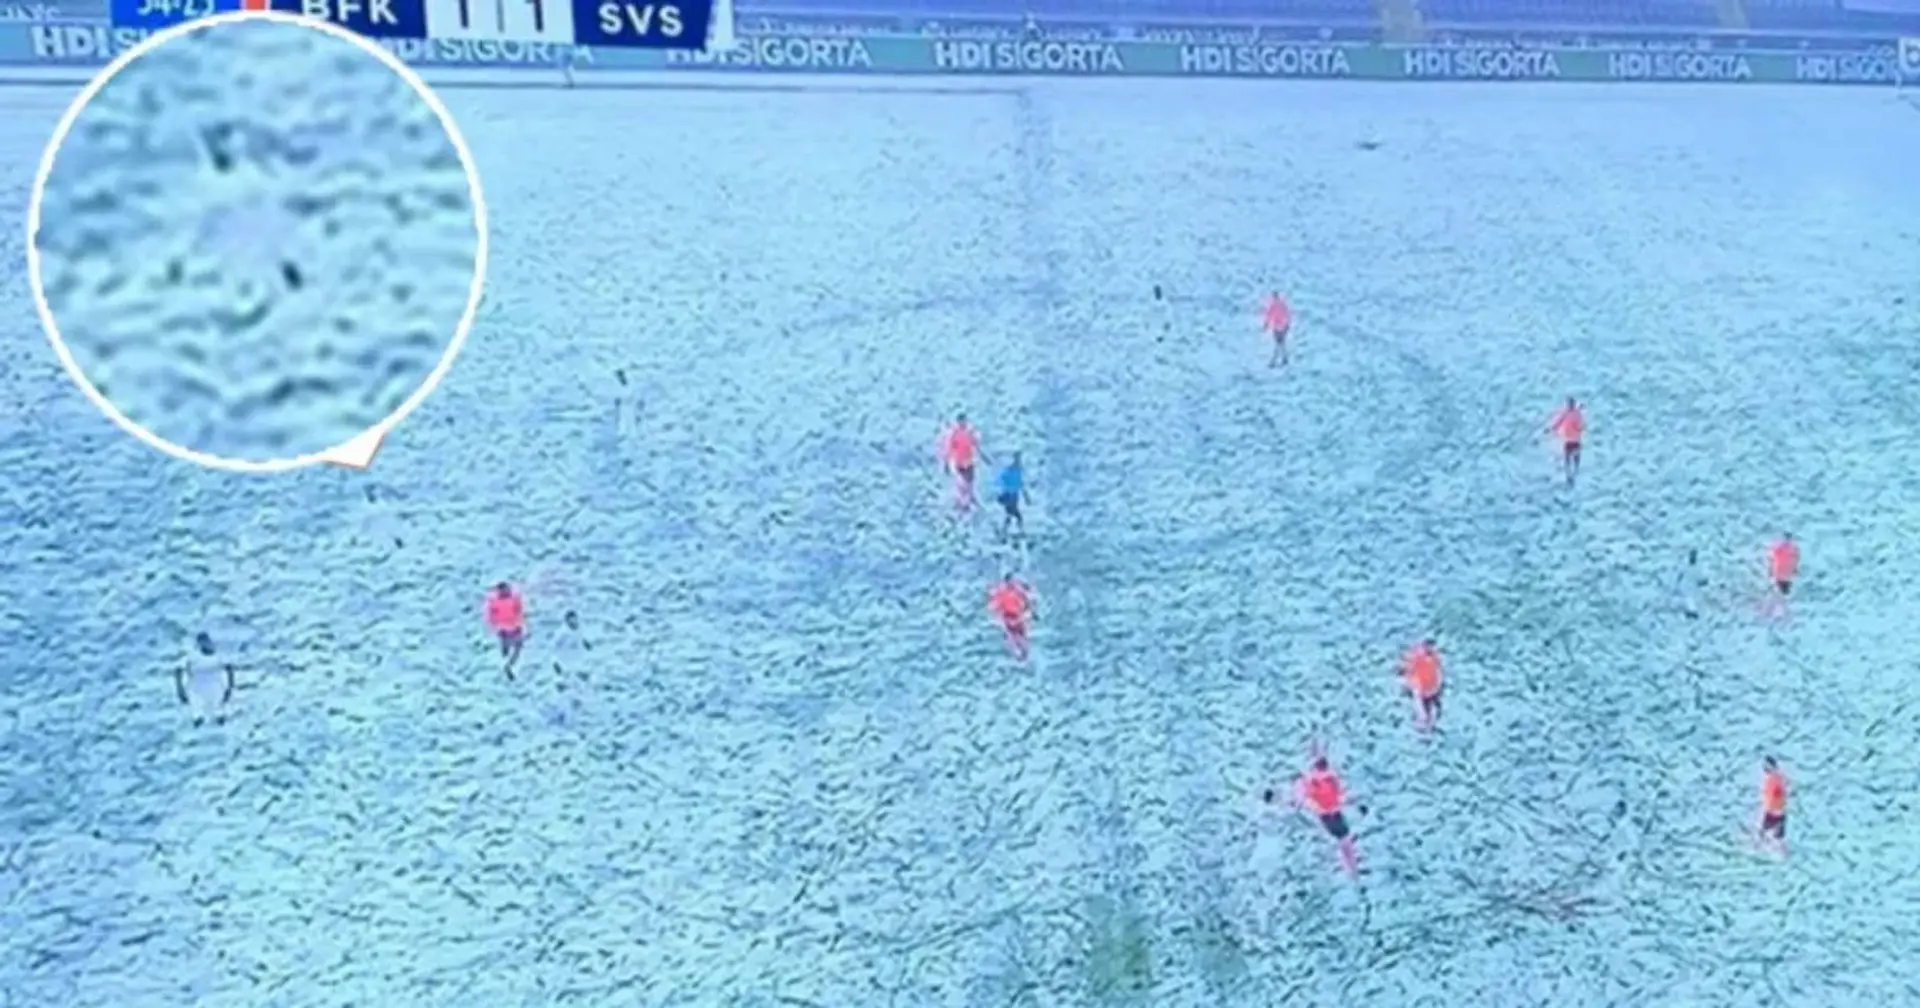 Un equipo turco sale a jugar bajo la nieve vestidos de blanco, pasando desapercibidos en las imágenes